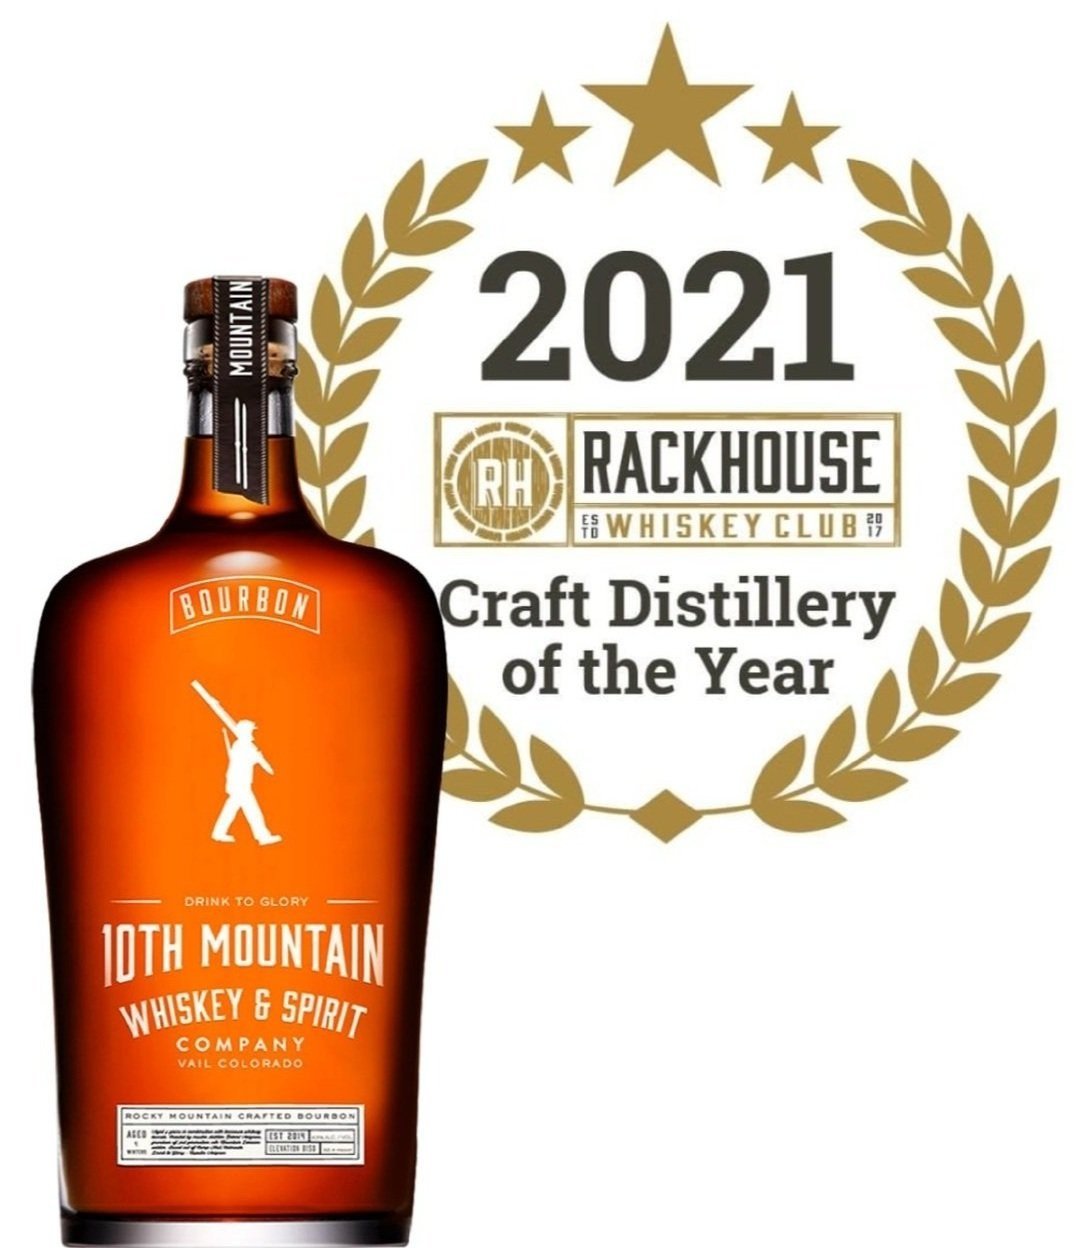 10th Mountain Bourbon - 750ML